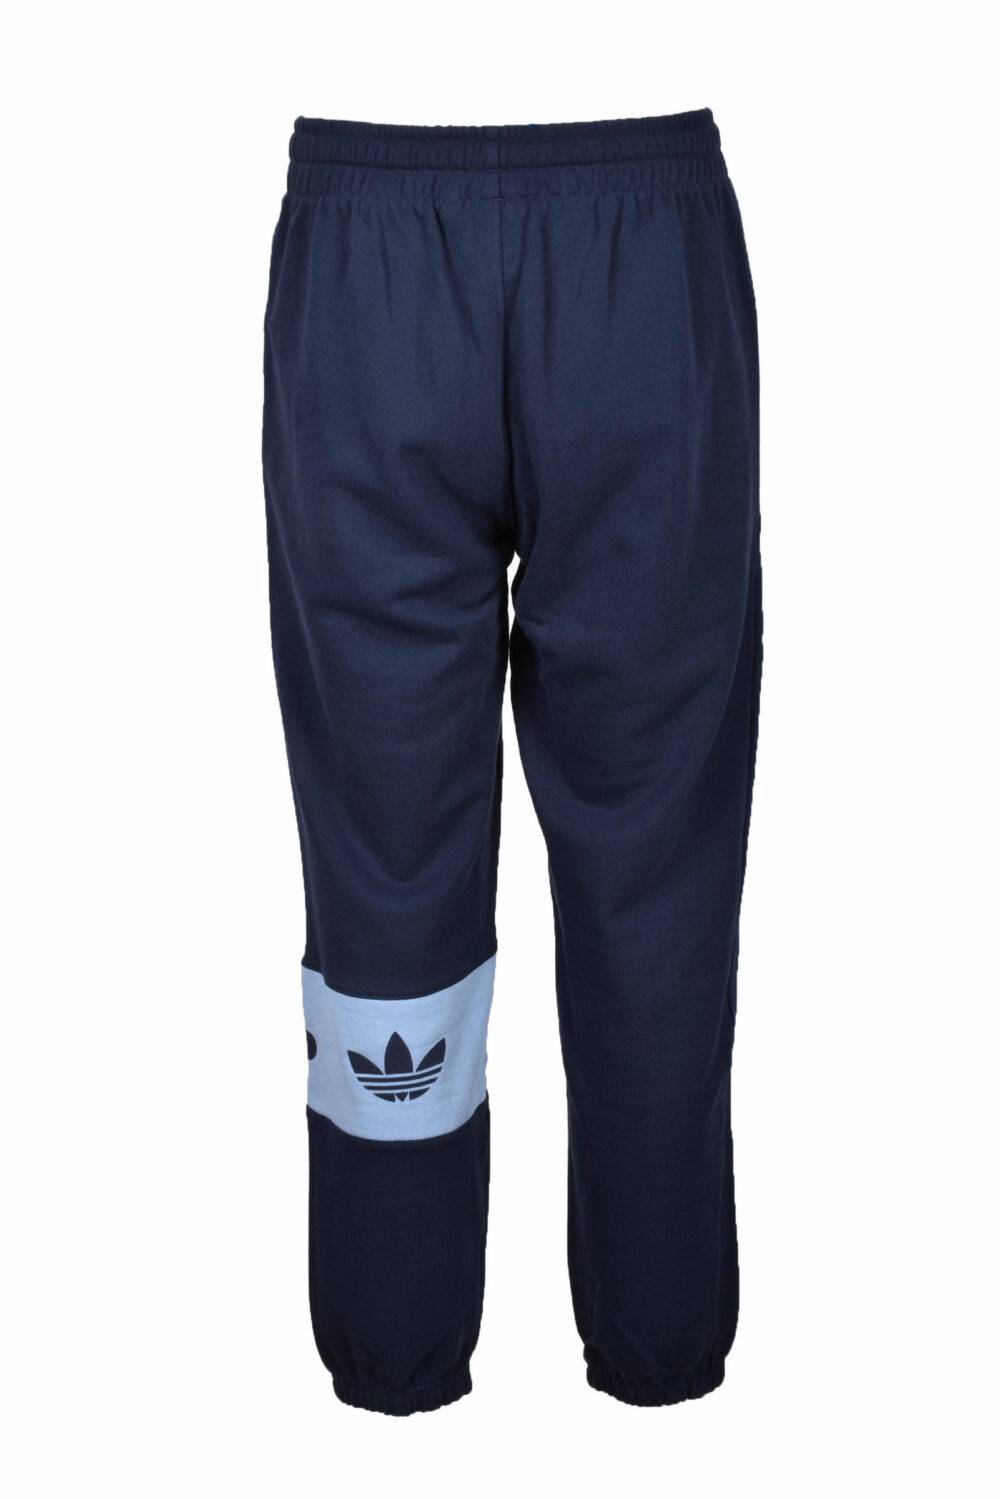 Pantaloni Adidas Blu - Foto 2